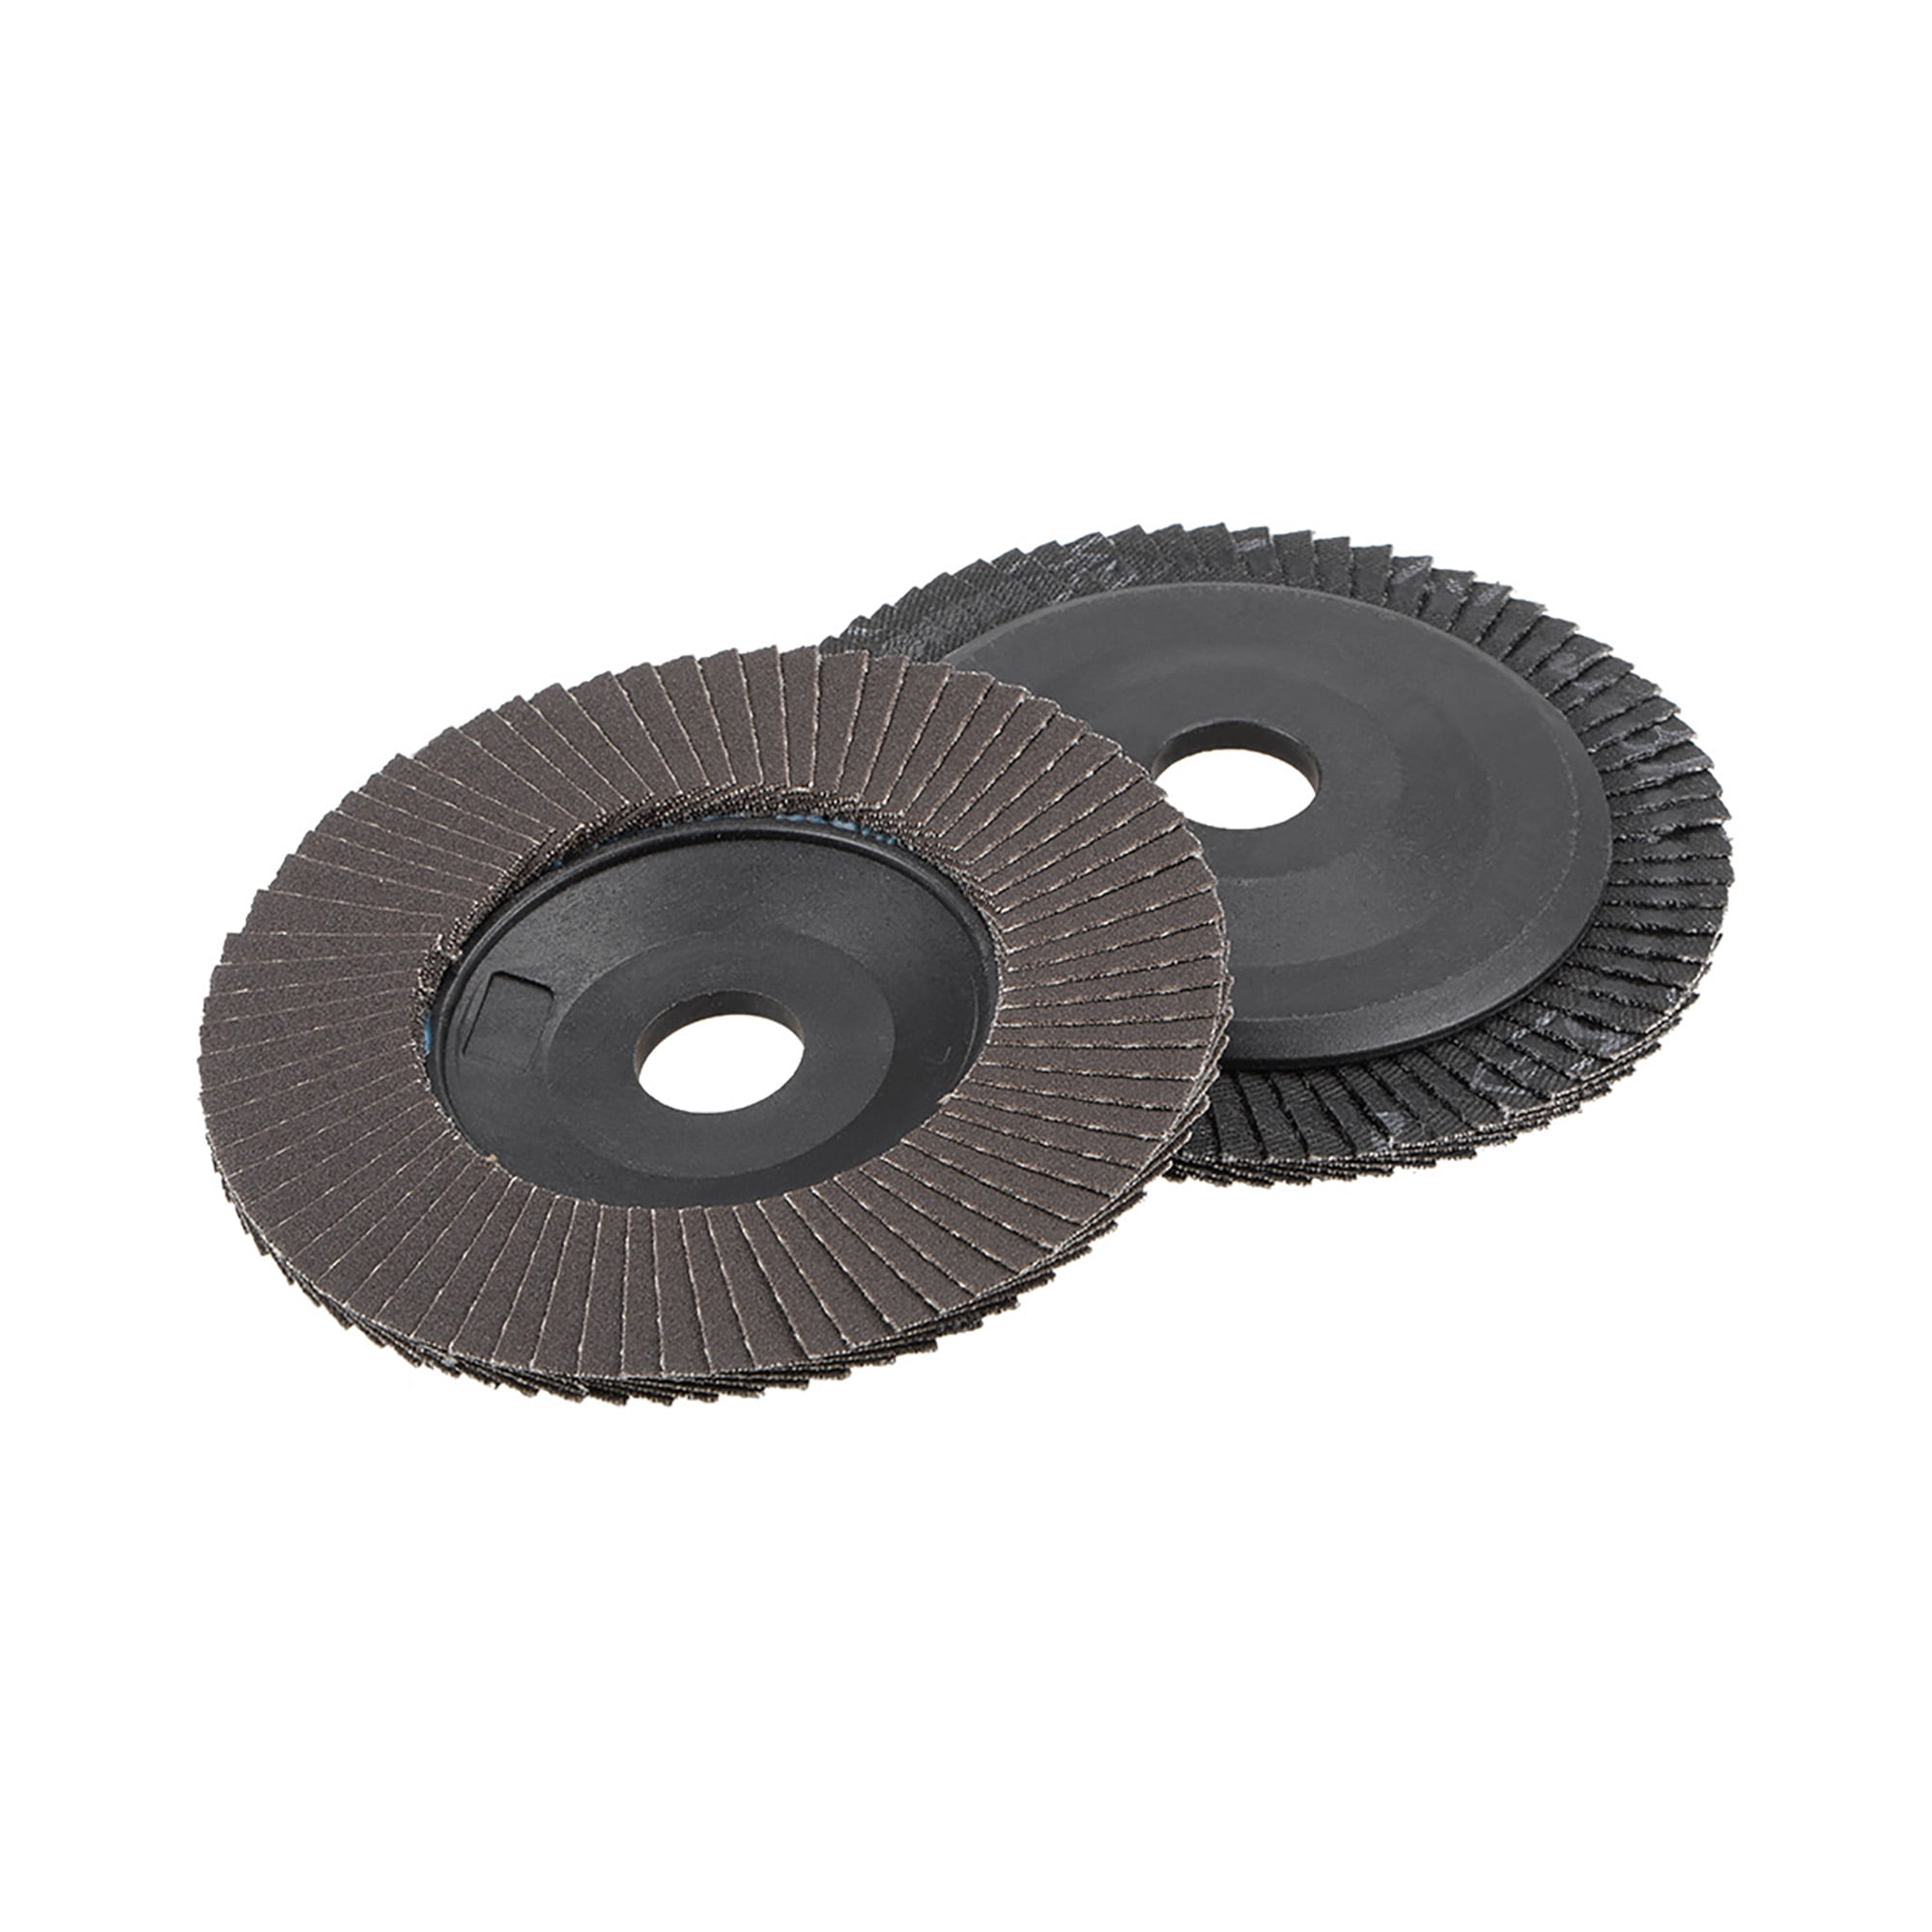 2pcs Abrasive Flap sanding Wheel 4-INCH x 1"x5/8" 80 Grit 